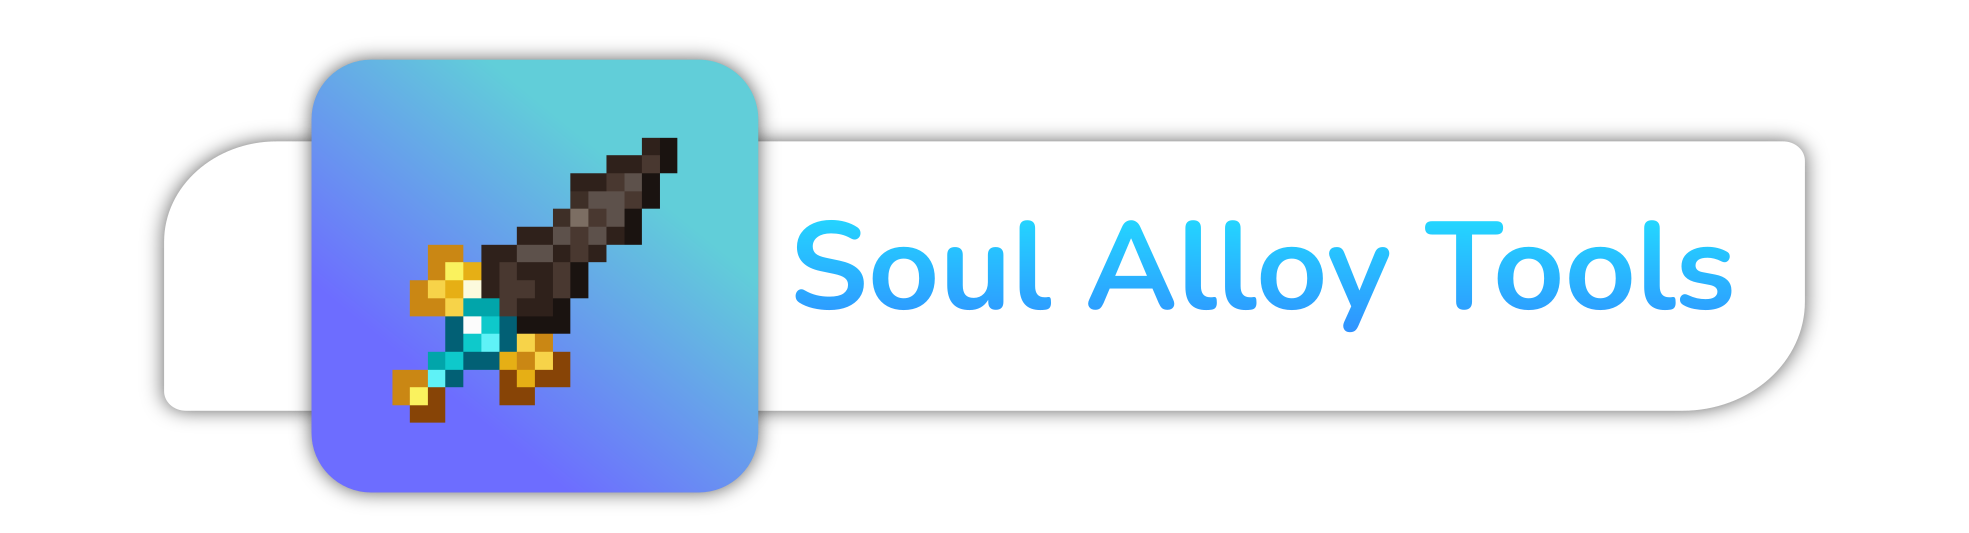 Soul Alloy Tools